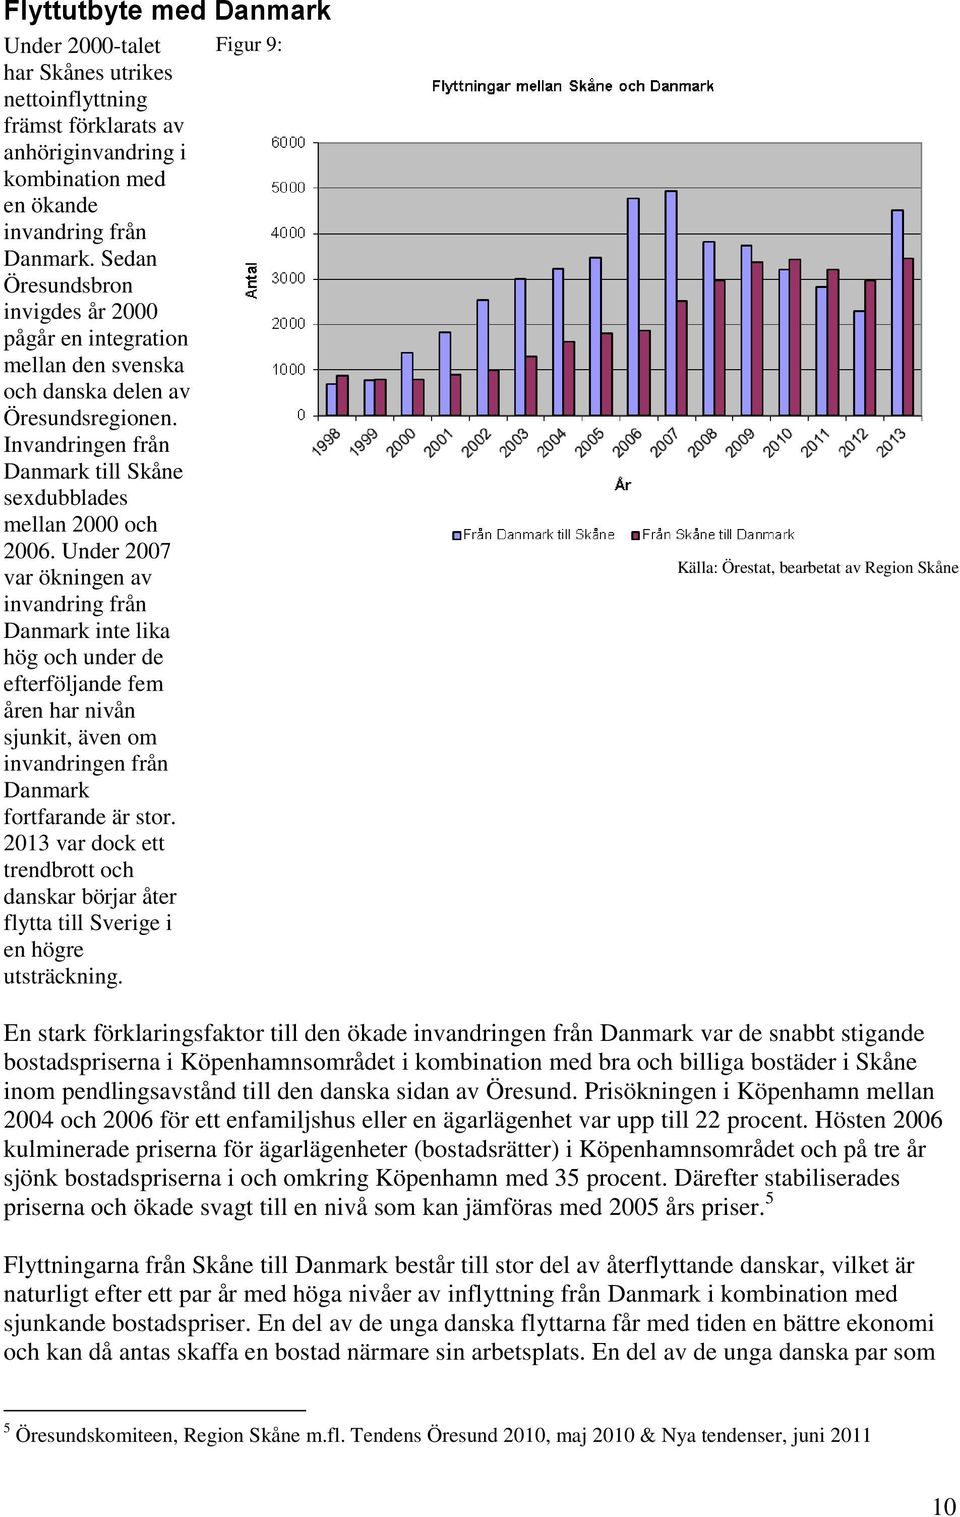 Under 27 var ökningen av invandring från Danmark inte lika hög och under de efterföljande fem åren har nivån sjunkit, även om invandringen från Danmark fortfarande är stor.